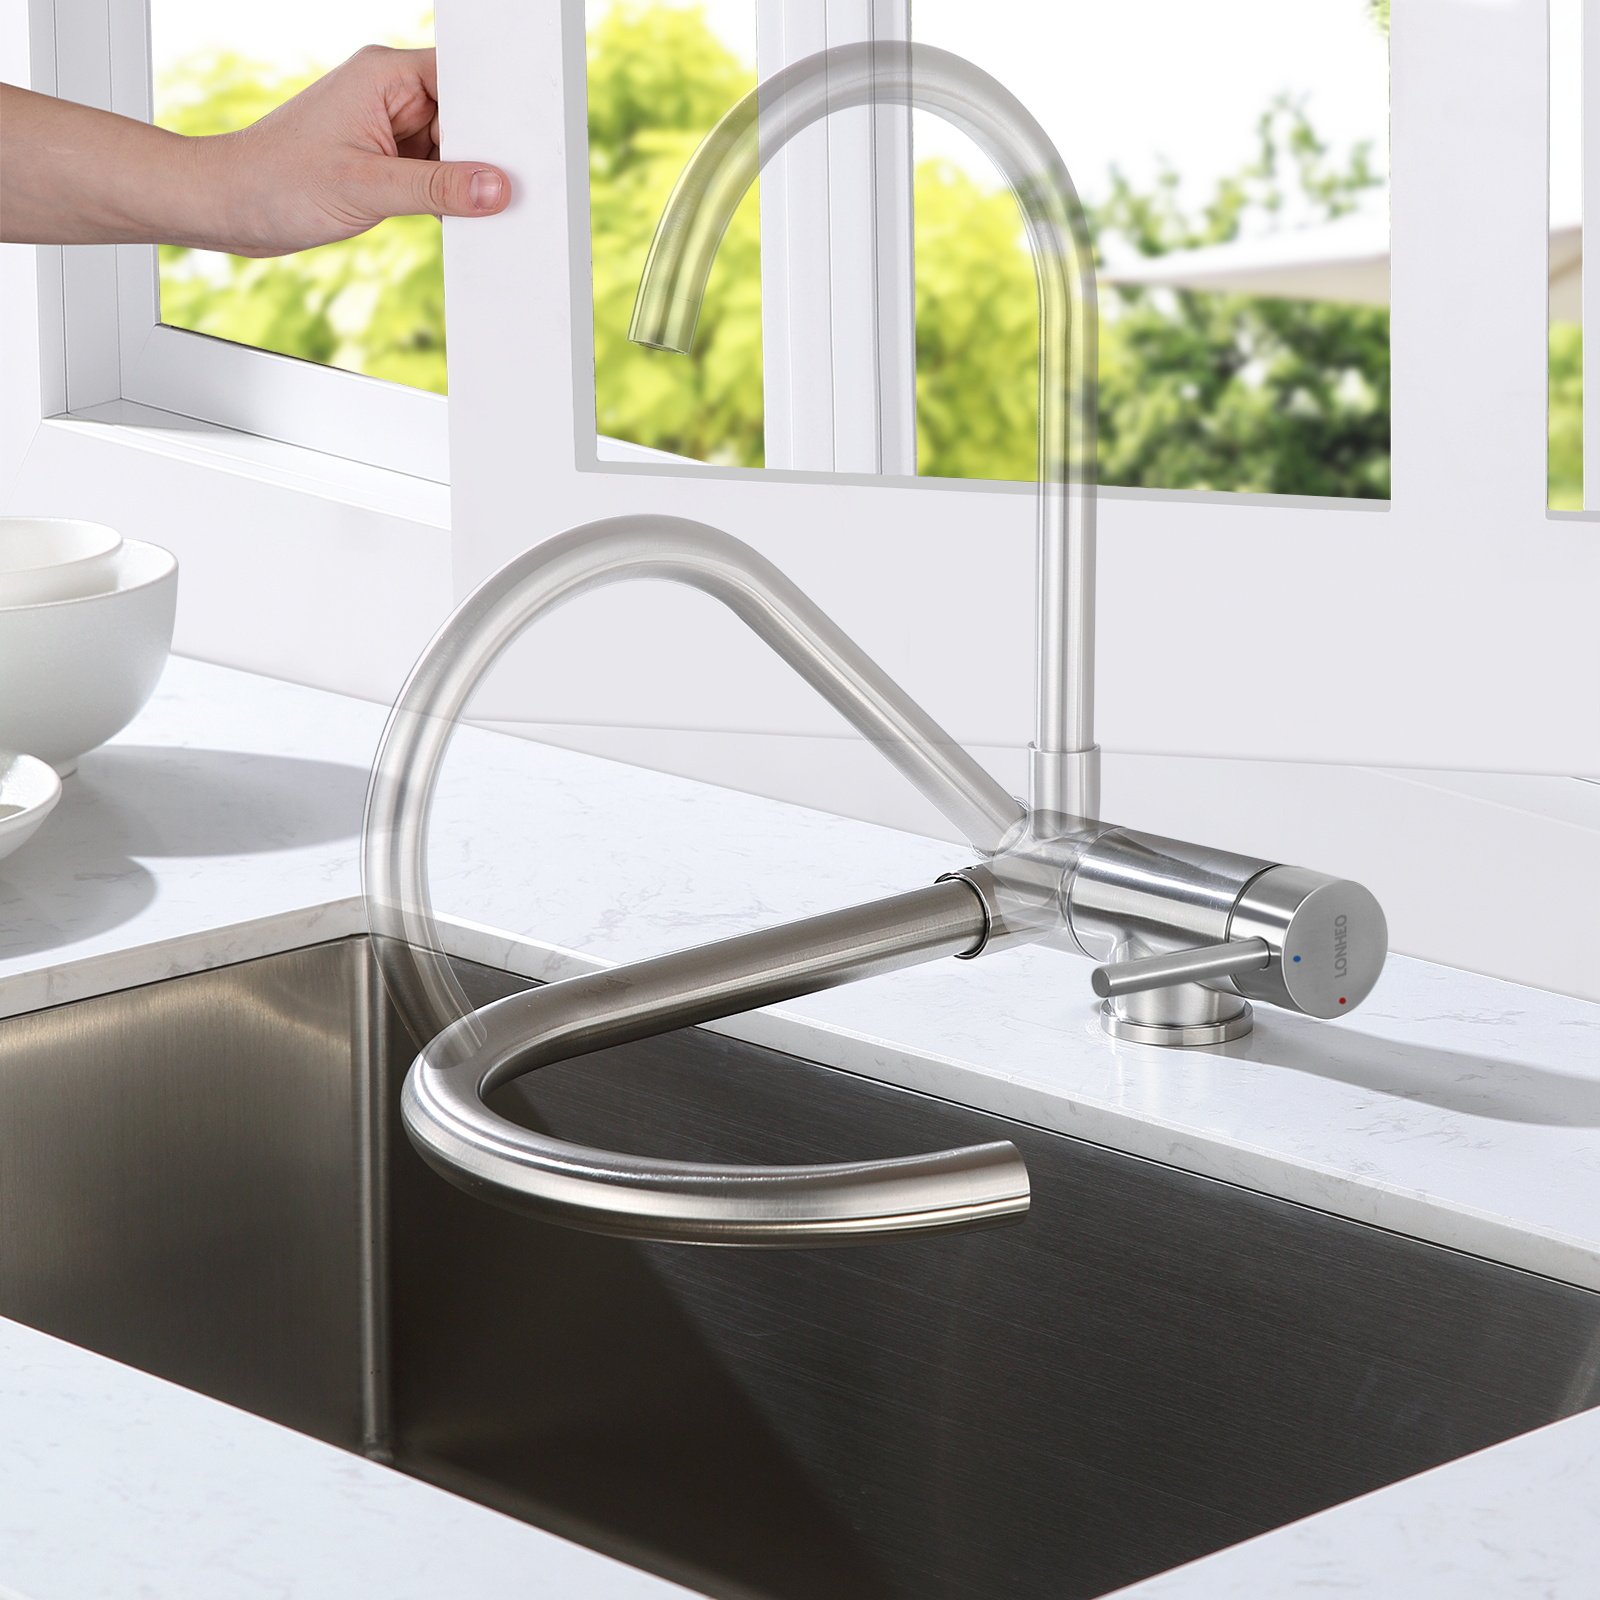 rubinetto da cucina estraibile ad alta pressione Lonheo rubinetto da cucina in acciaio inox con doccetta estraibile girevole a 360° 